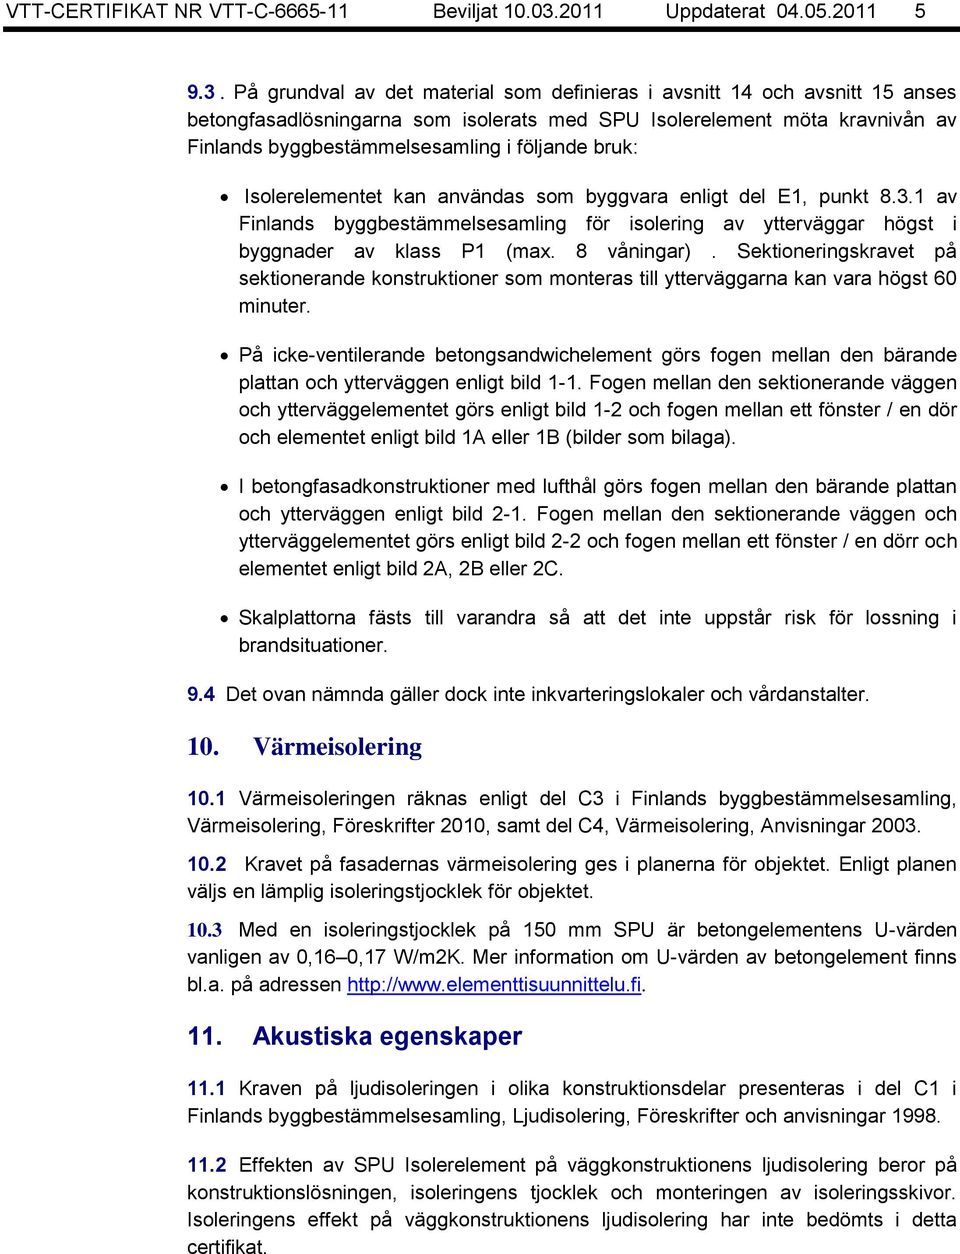 På grundval av det material som definieras i avsnitt 14 och avsnitt 15 anses betongfasadlösningarna som isolerats med SPU Isolerelement möta kravnivån av Finlands byggbestämmelsesamling i följande